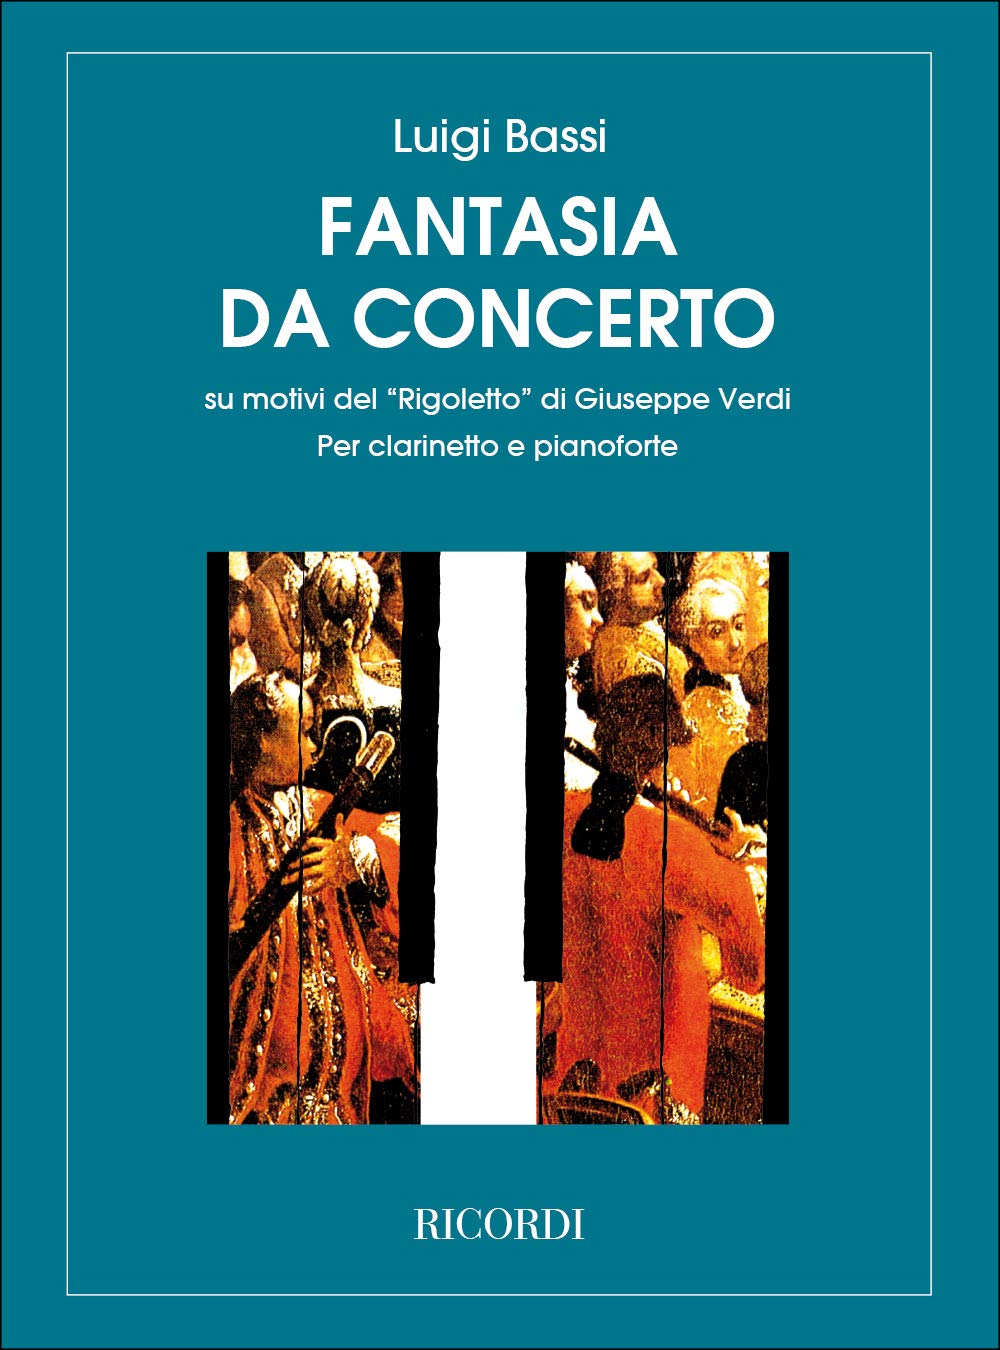 Bassi Verdi Rigoletto Fantasia Clarinet and Piano